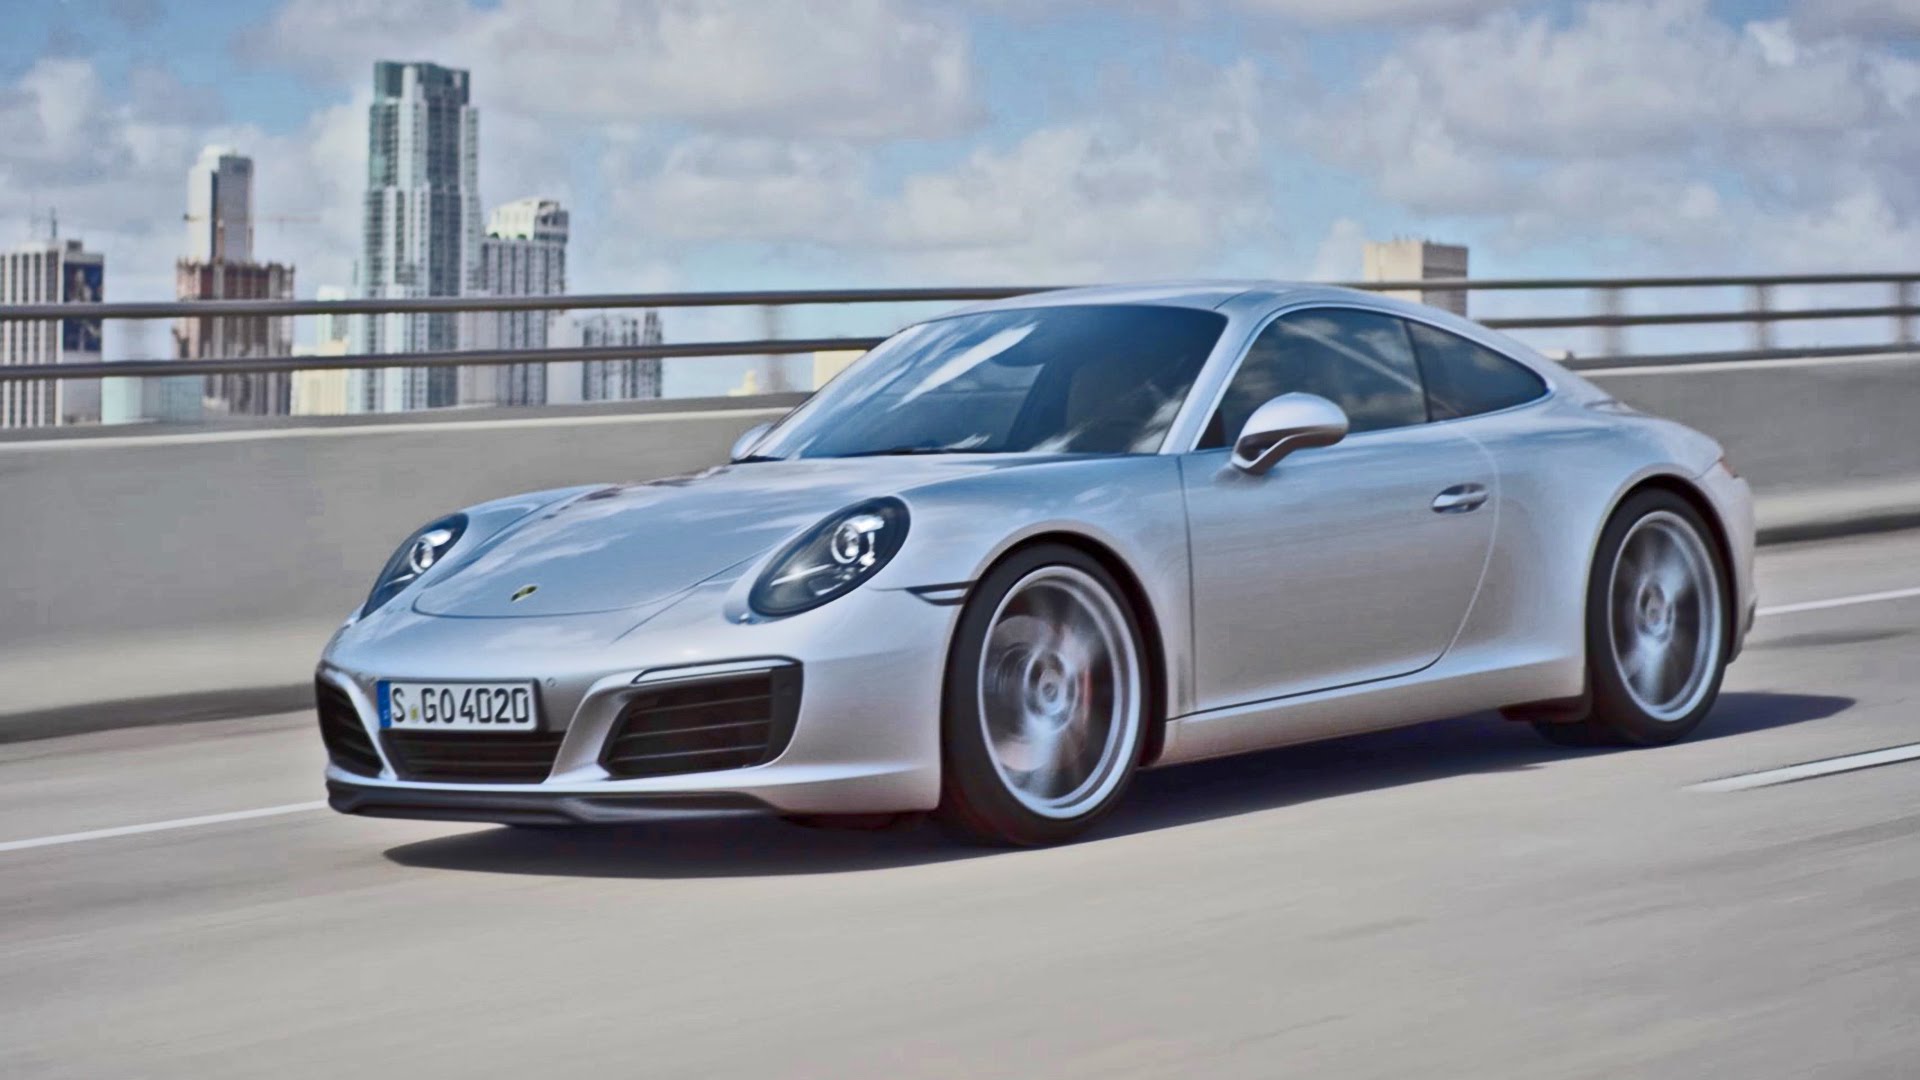 CARRO: Porsche 911 Carrera T chega ao Brasil - Revista Mensch